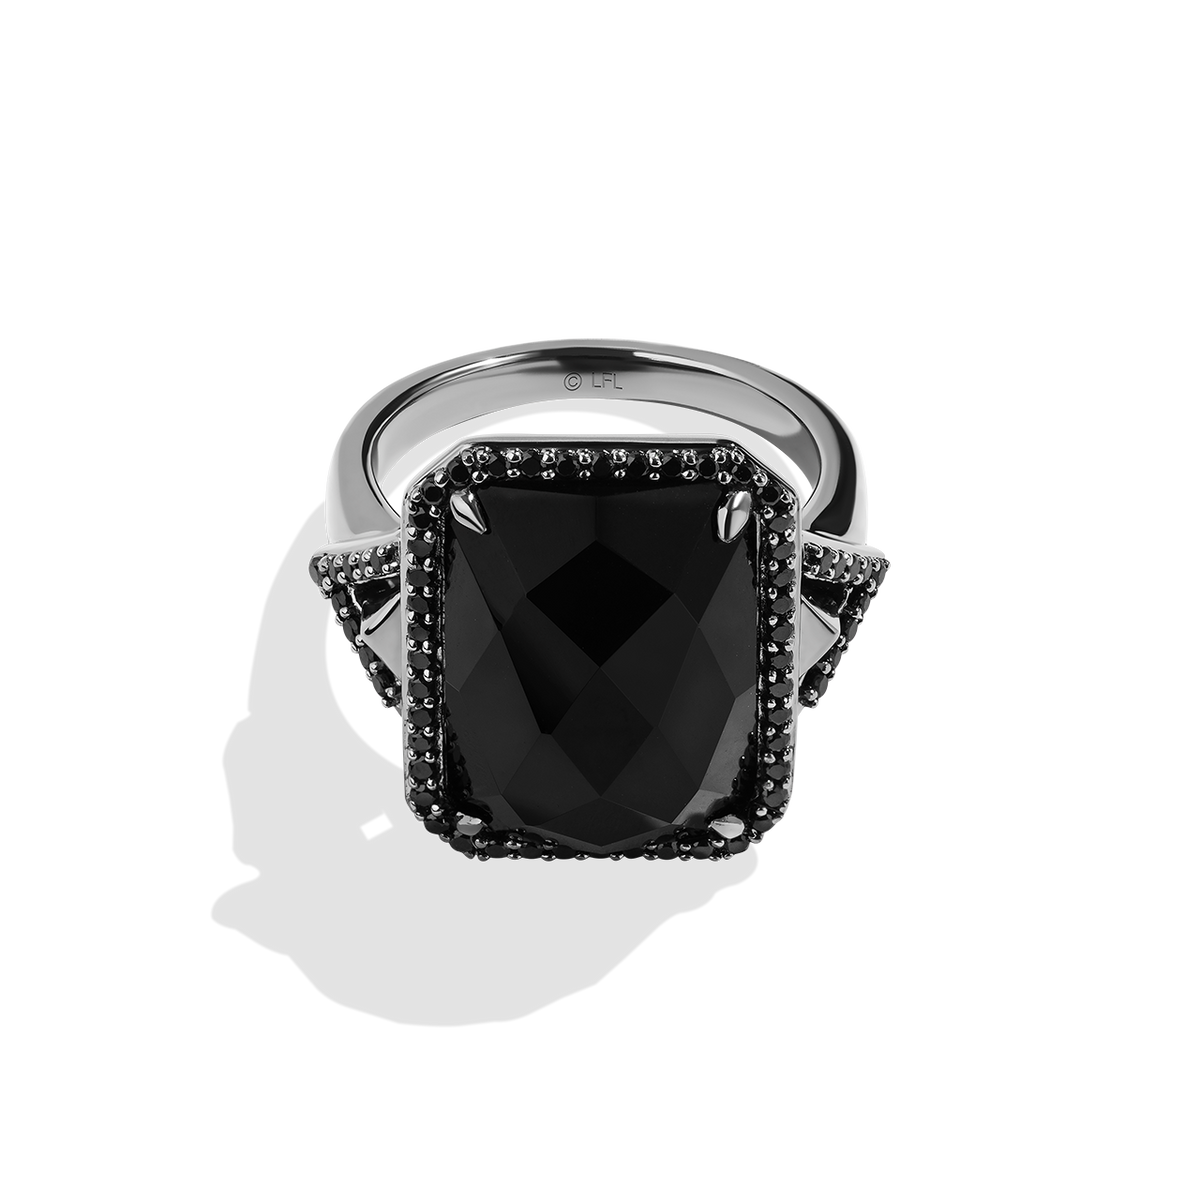 Black Obsidian Ring, Evil Eye Ring, Handmade Ring, Gemstone Ring, Gold Ring,  Black Stone Ring, Personalized Gift, Gift for Women,unique Ring - Etsy